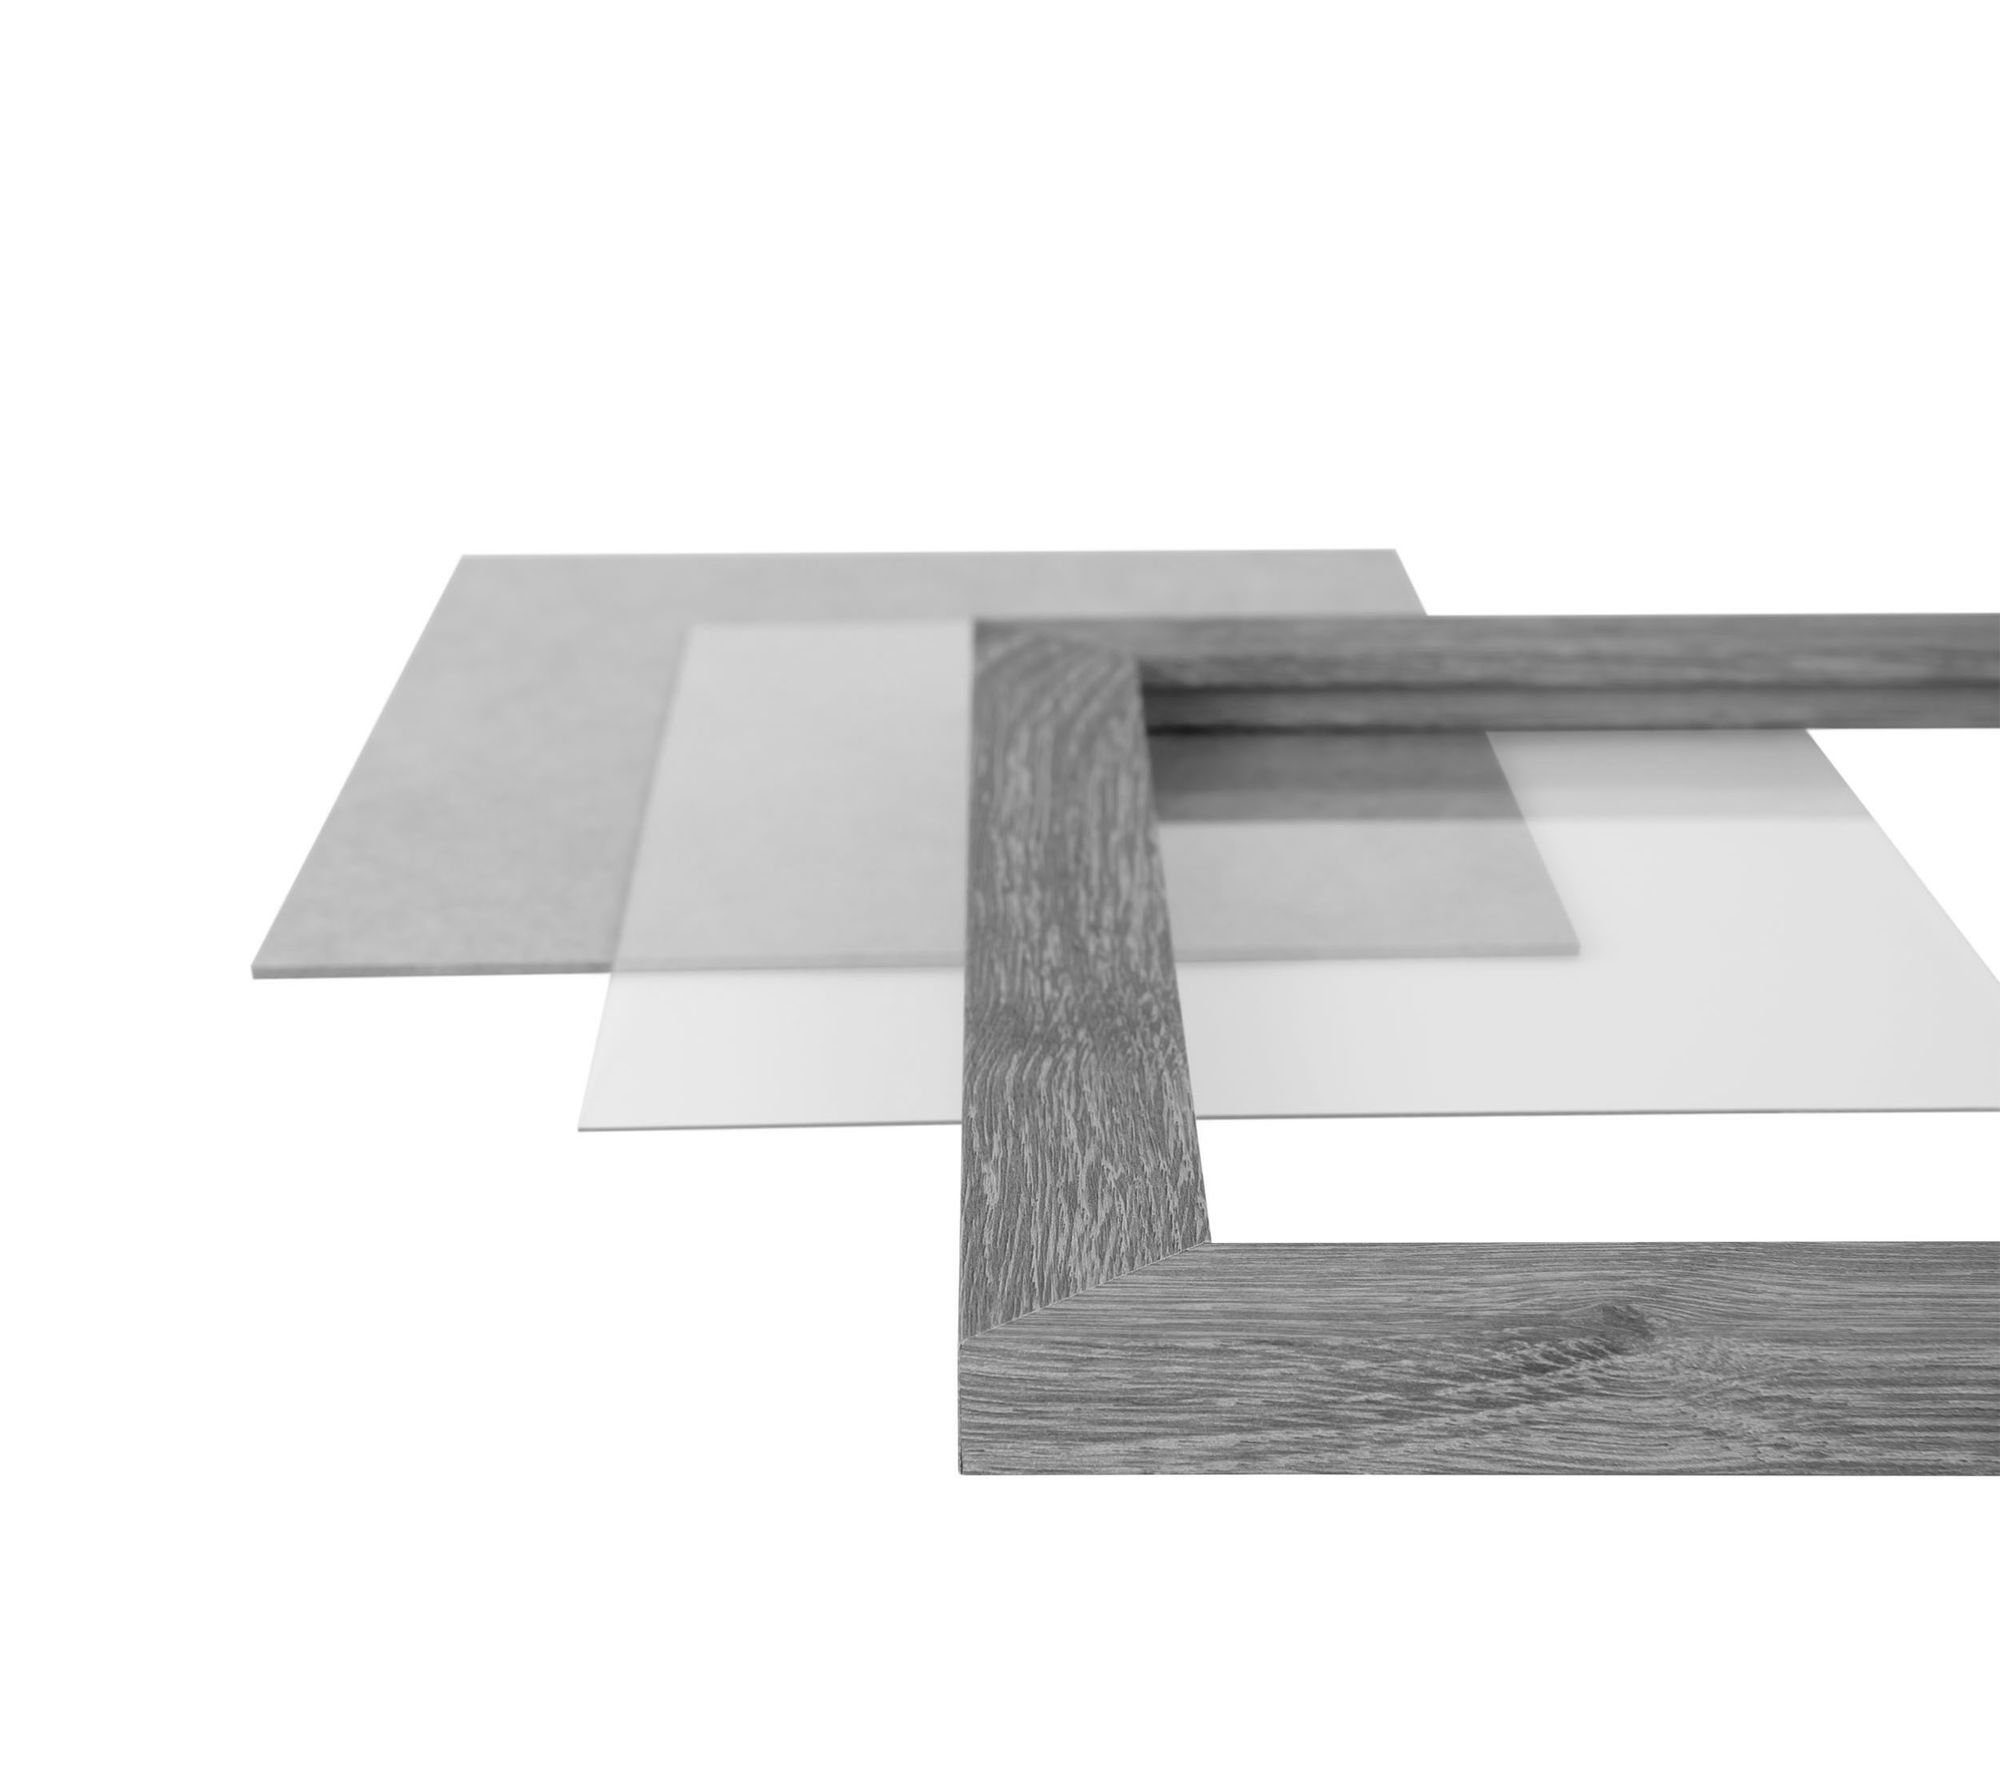 Clamaro Bilderrahmen Bilderrahmen gebürstet silber MDF nach eckiger Acrylglas, FSC® Holz in 'Collage' Maß 24x32 Rahmen Aufhänger Rückwand handgefertigt inkl. und Moderner CLAMARO